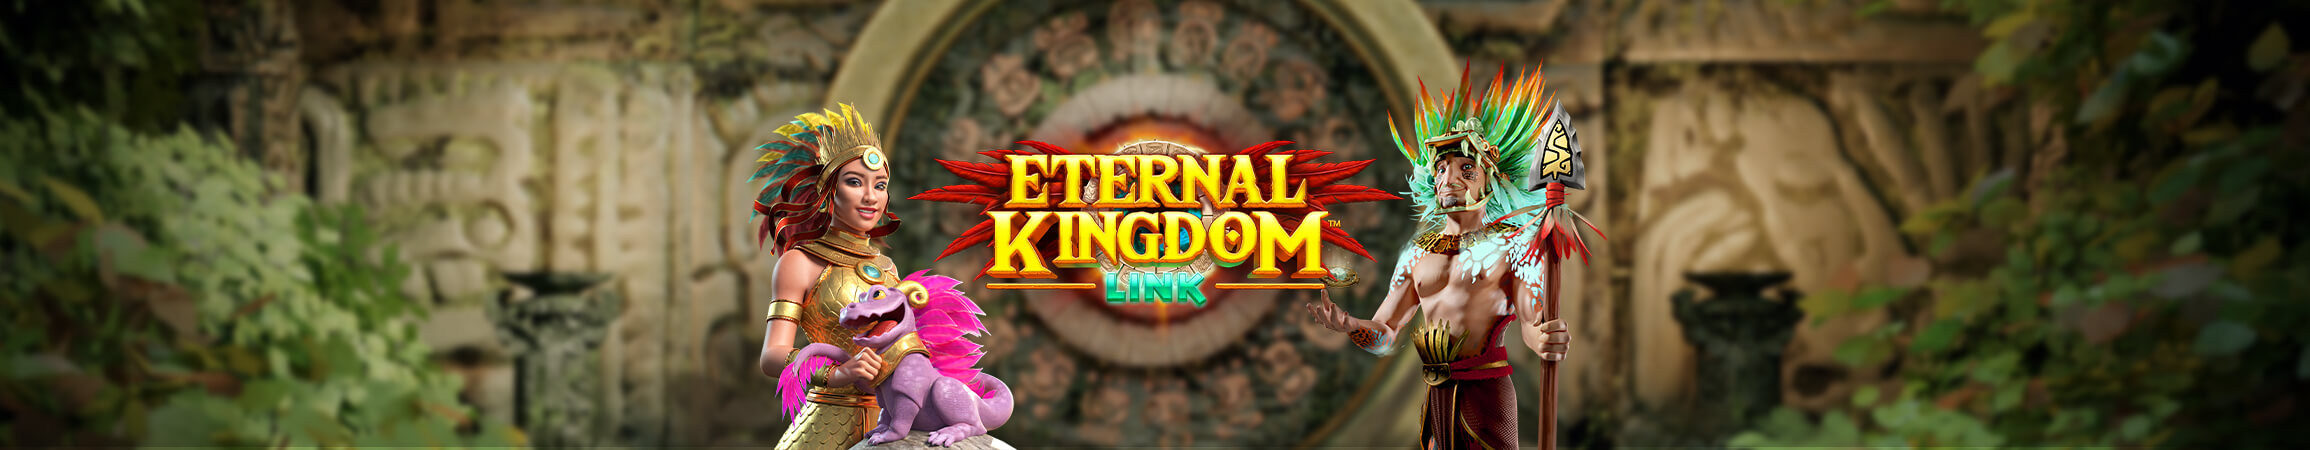 Eternal Kingdom Link: 6 video rodillos de FBM® que ofrecen adrenalina a los operadores de casino